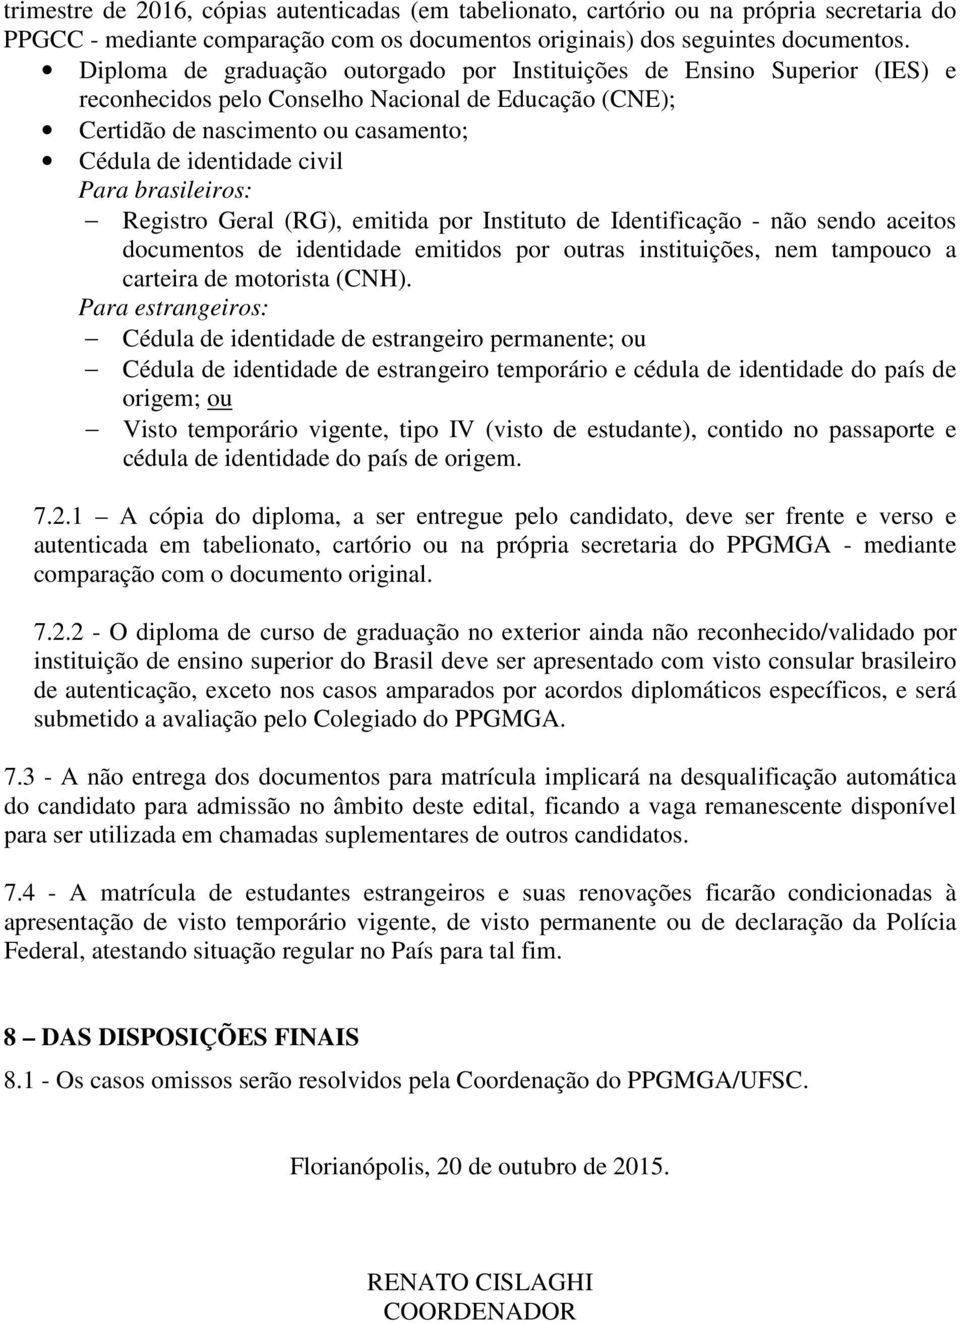 brasileiros: Registro Geral (RG), emitida por Instituto de Identificação - não sendo aceitos documentos de identidade emitidos por outras instituições, nem tampouco a carteira de motorista (CNH).